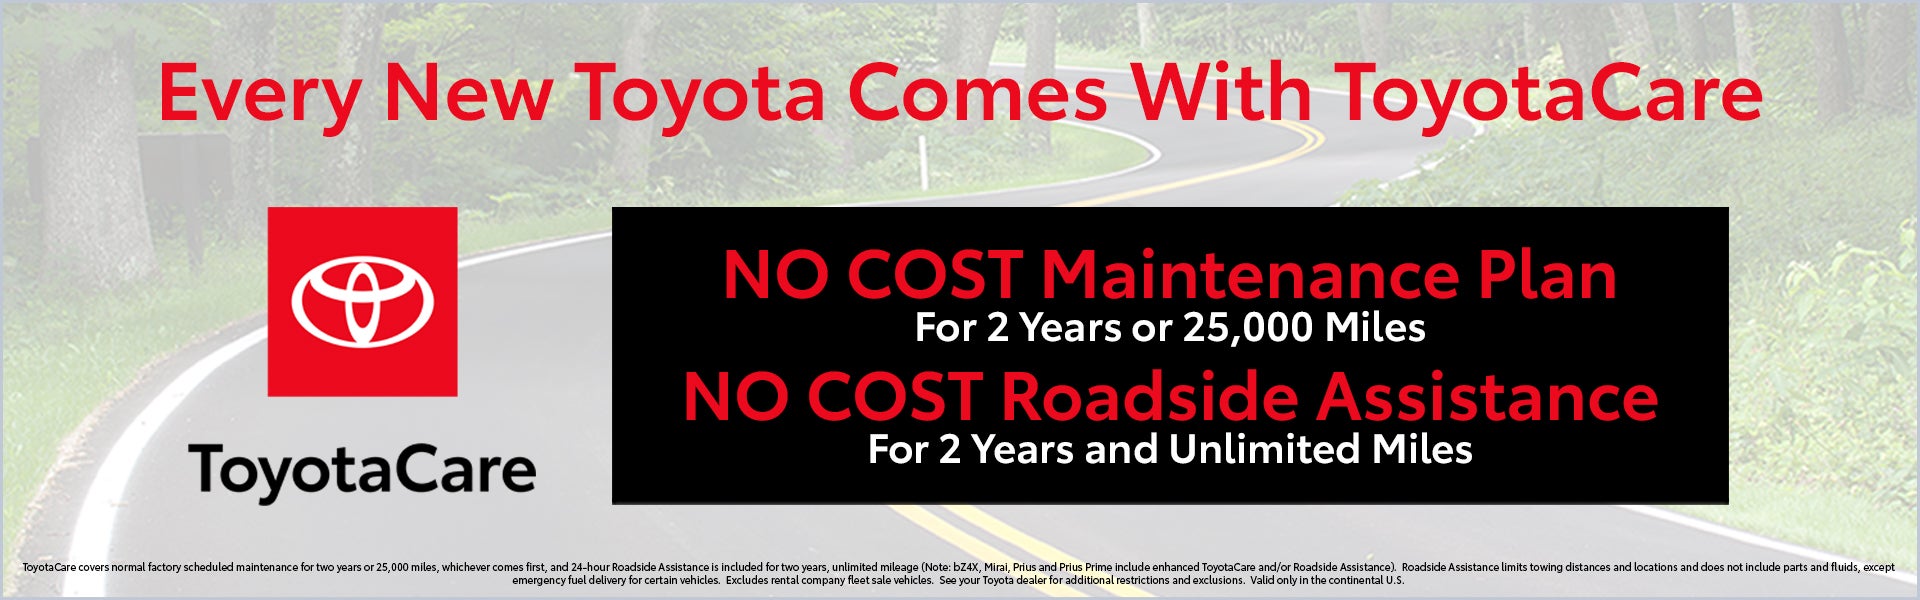 ToyotaCare Maintenance Plan